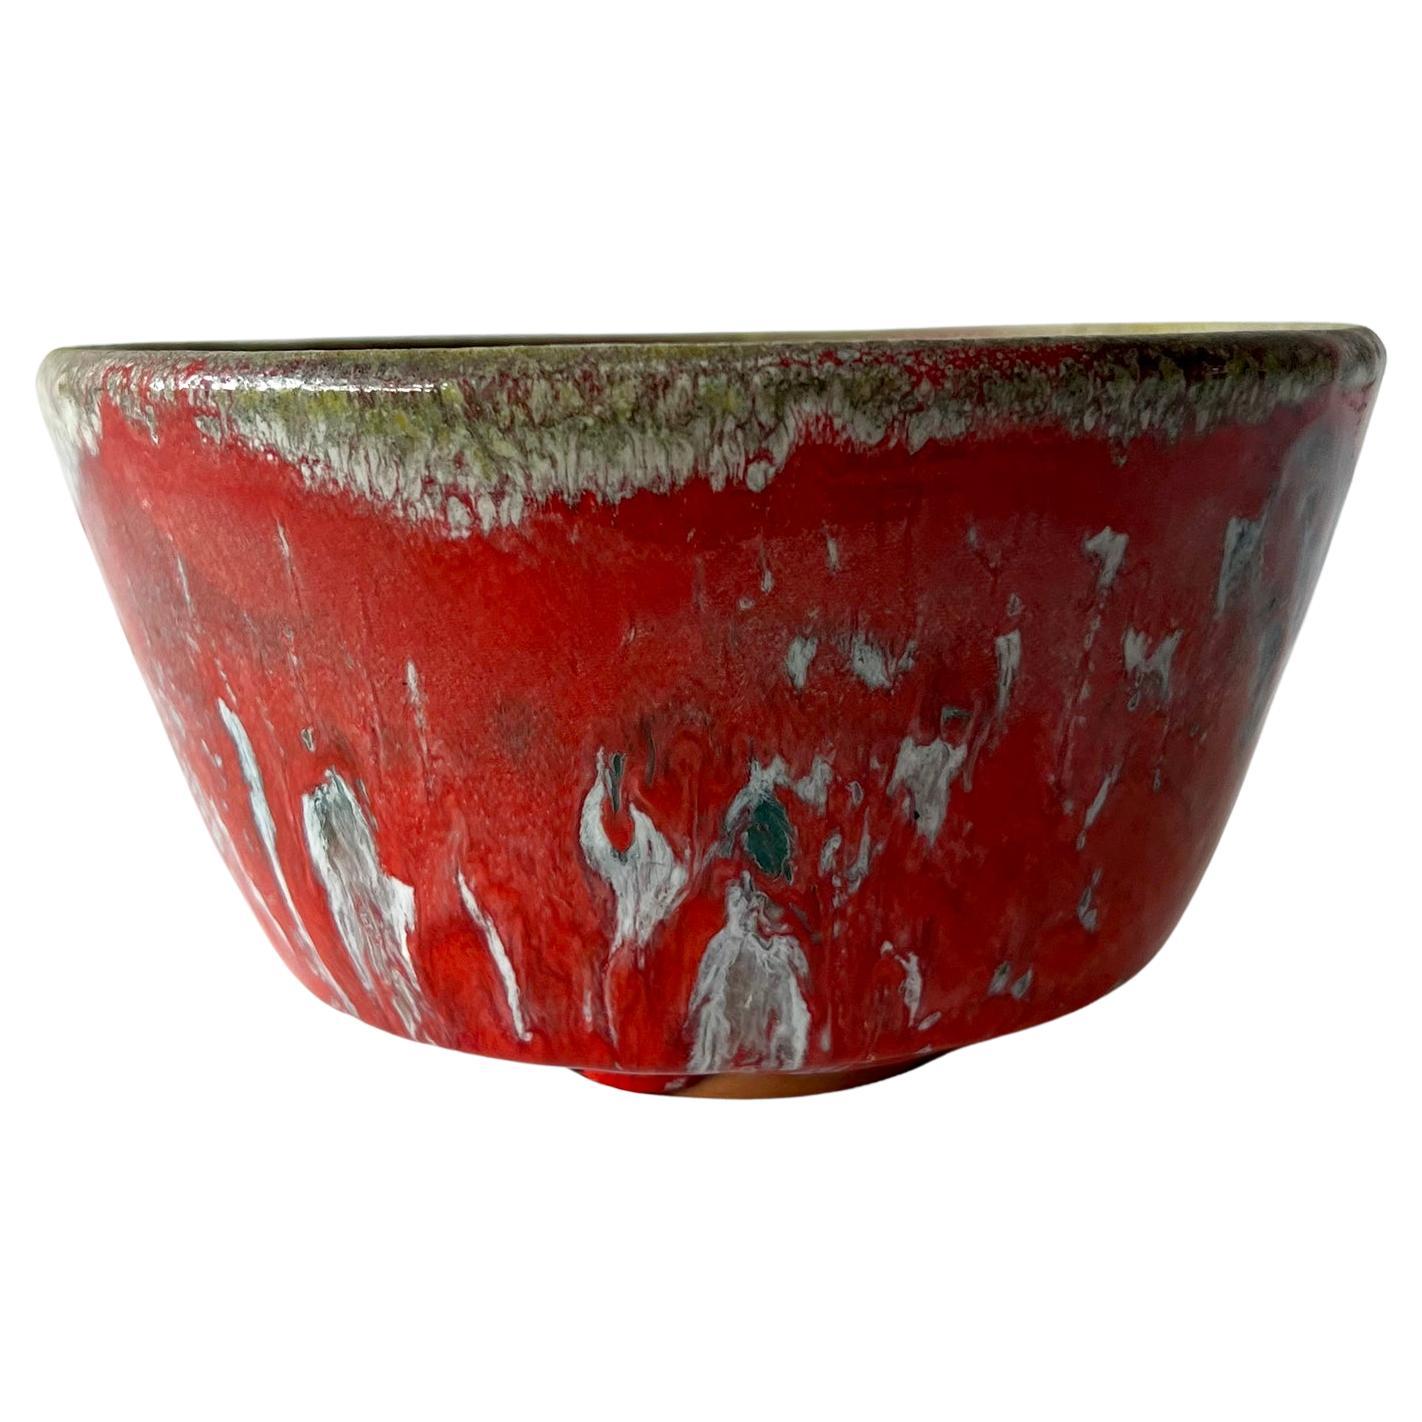 William Polia Pillin California Studio Colorful Ceramic Bowl